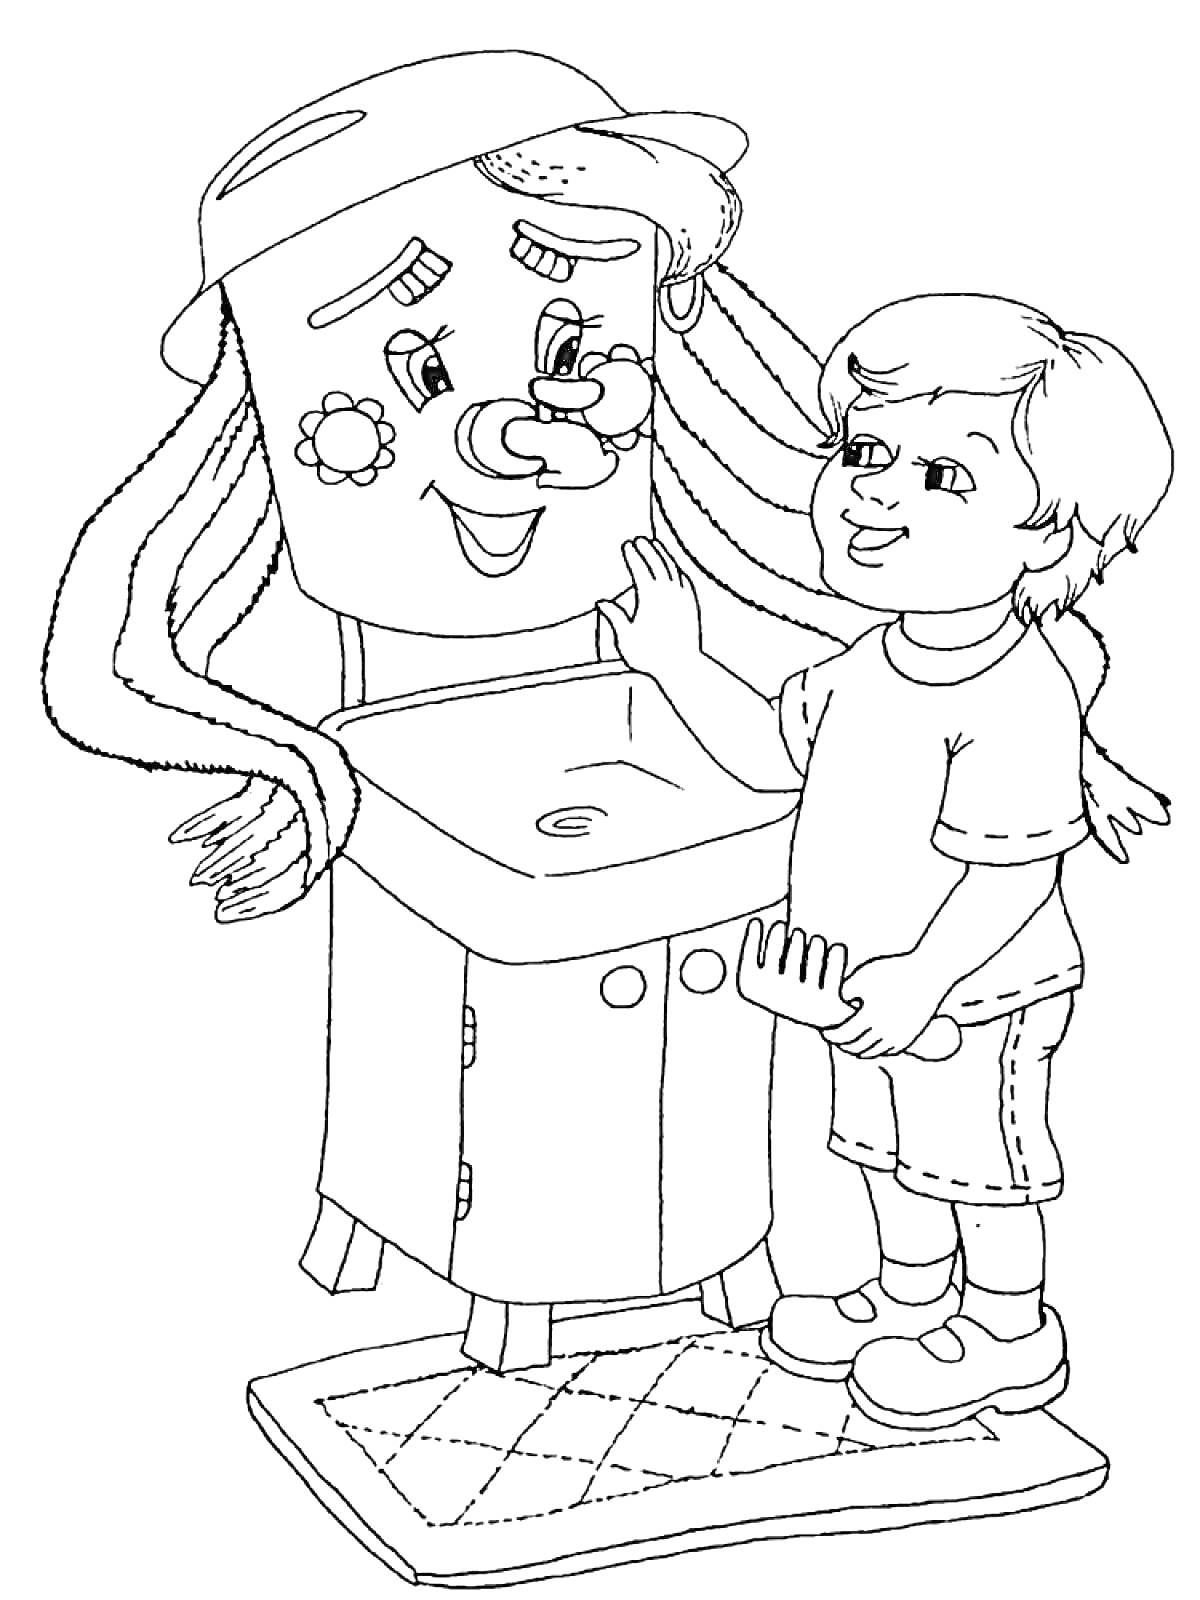 РаскраскаМойдодыр и мальчик у раковины